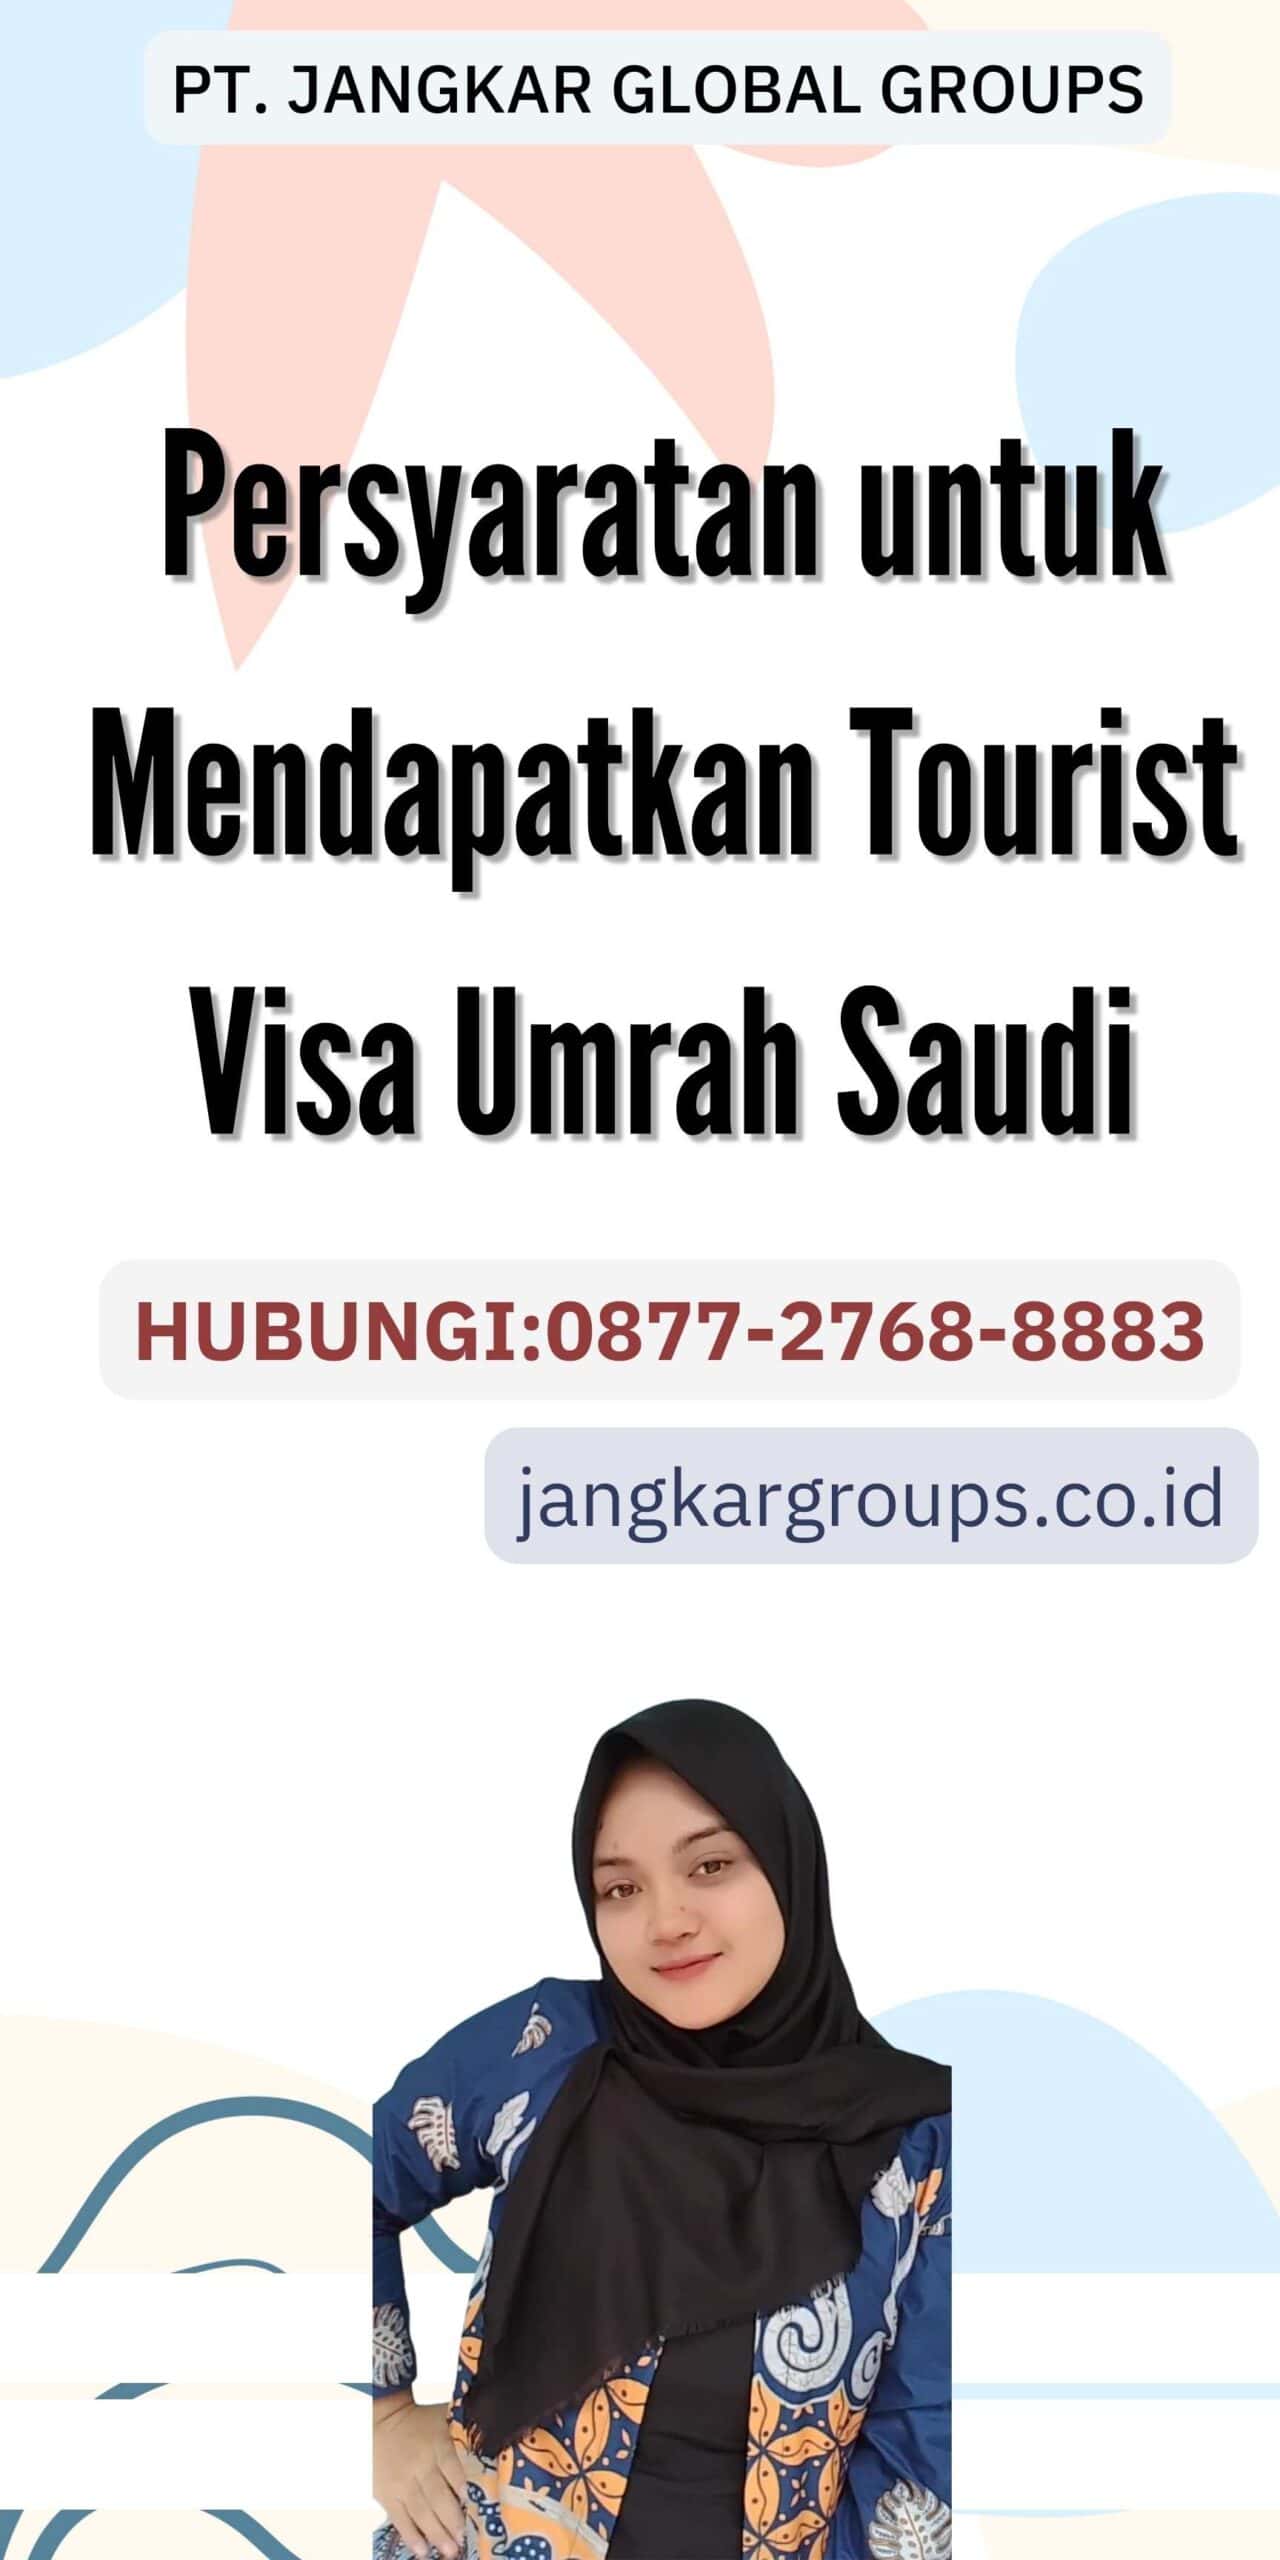 Persyaratan untuk Mendapatkan Tourist Visa Umrah Saudi